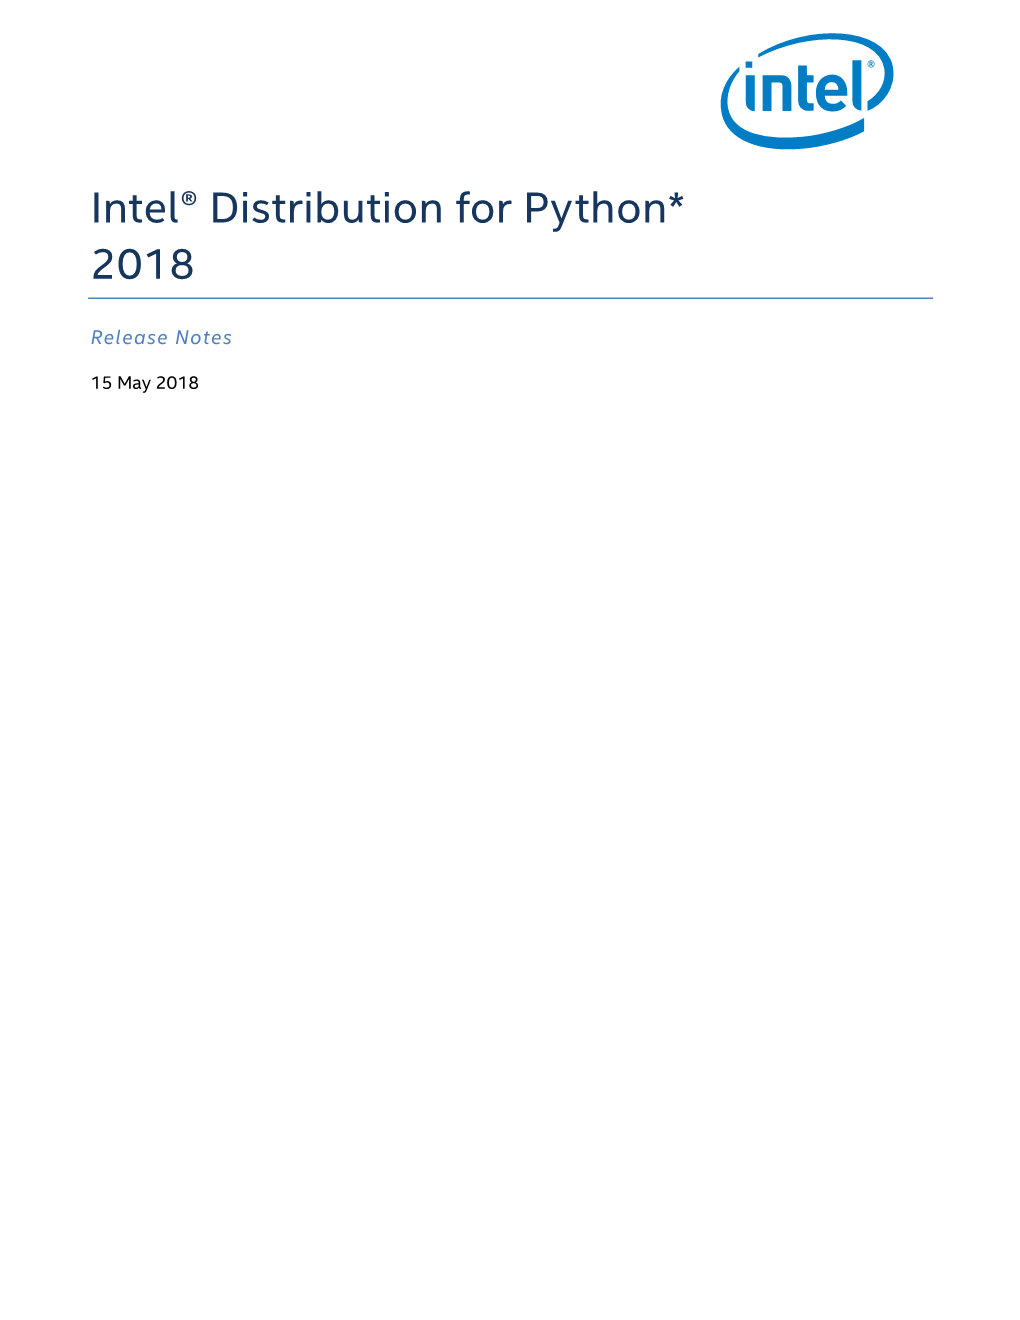 Intel® Distribution for Python* 2018